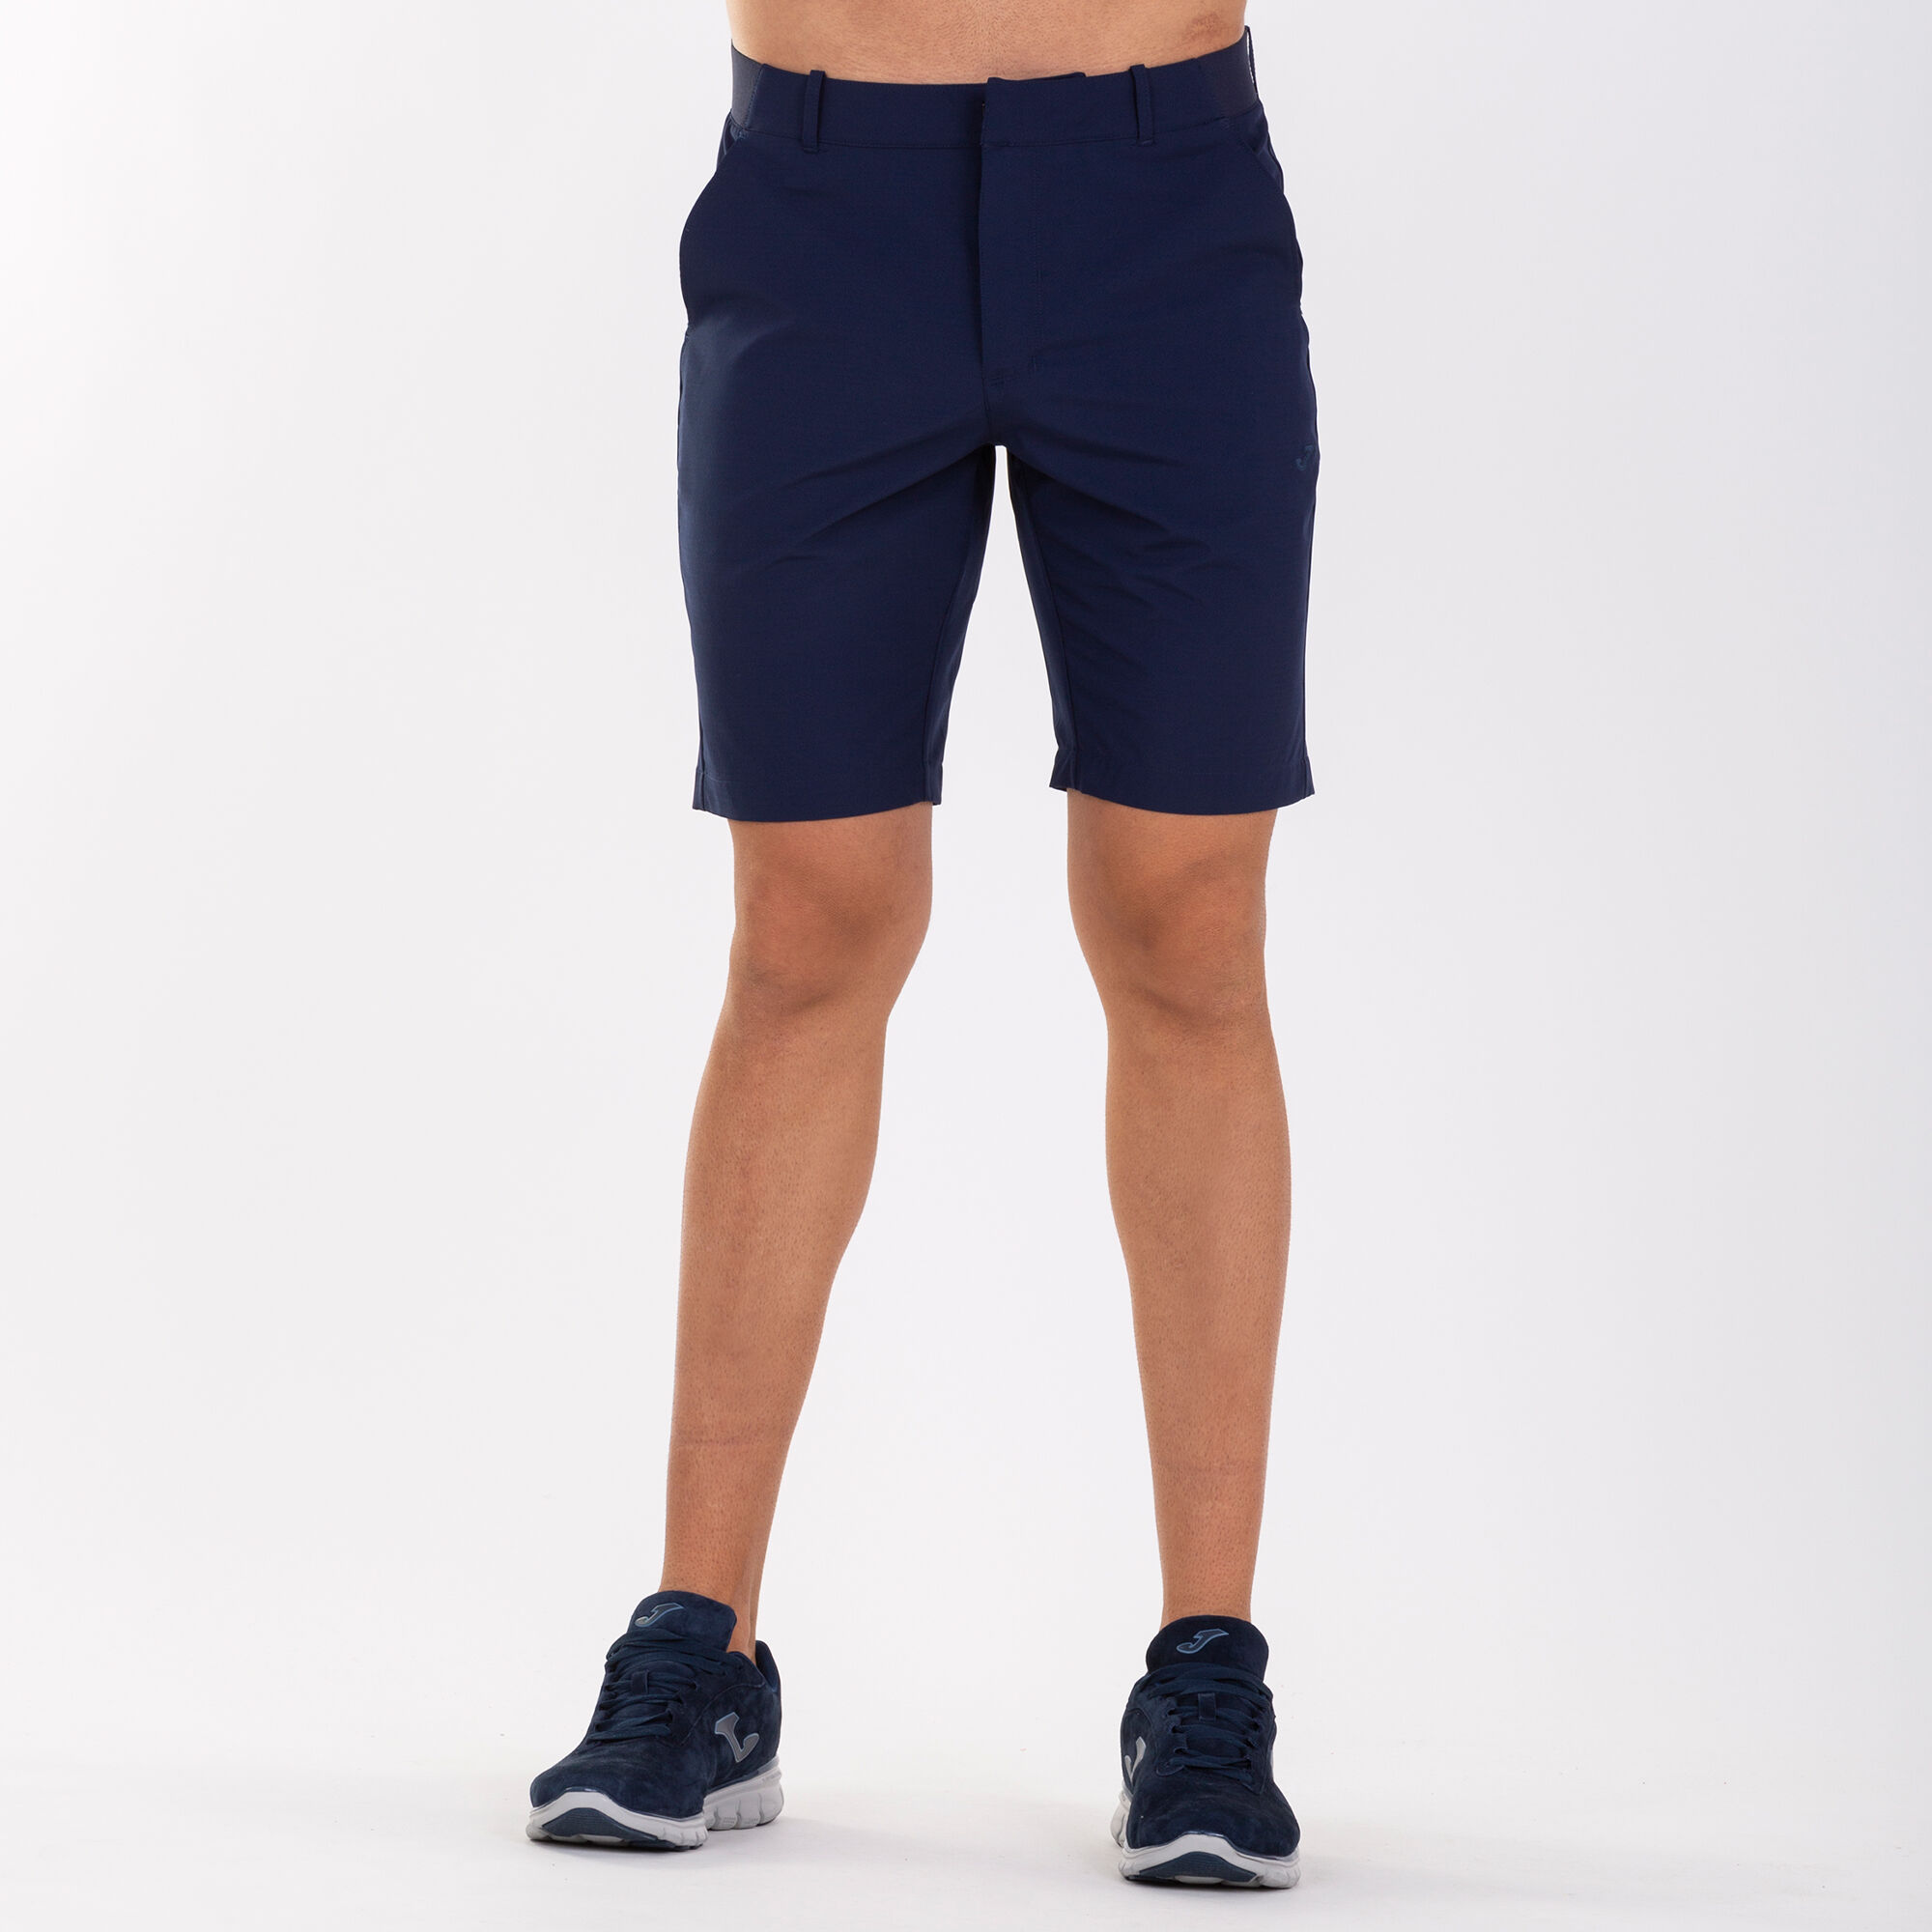 Bermuda shorts man Pasarela III navy blue